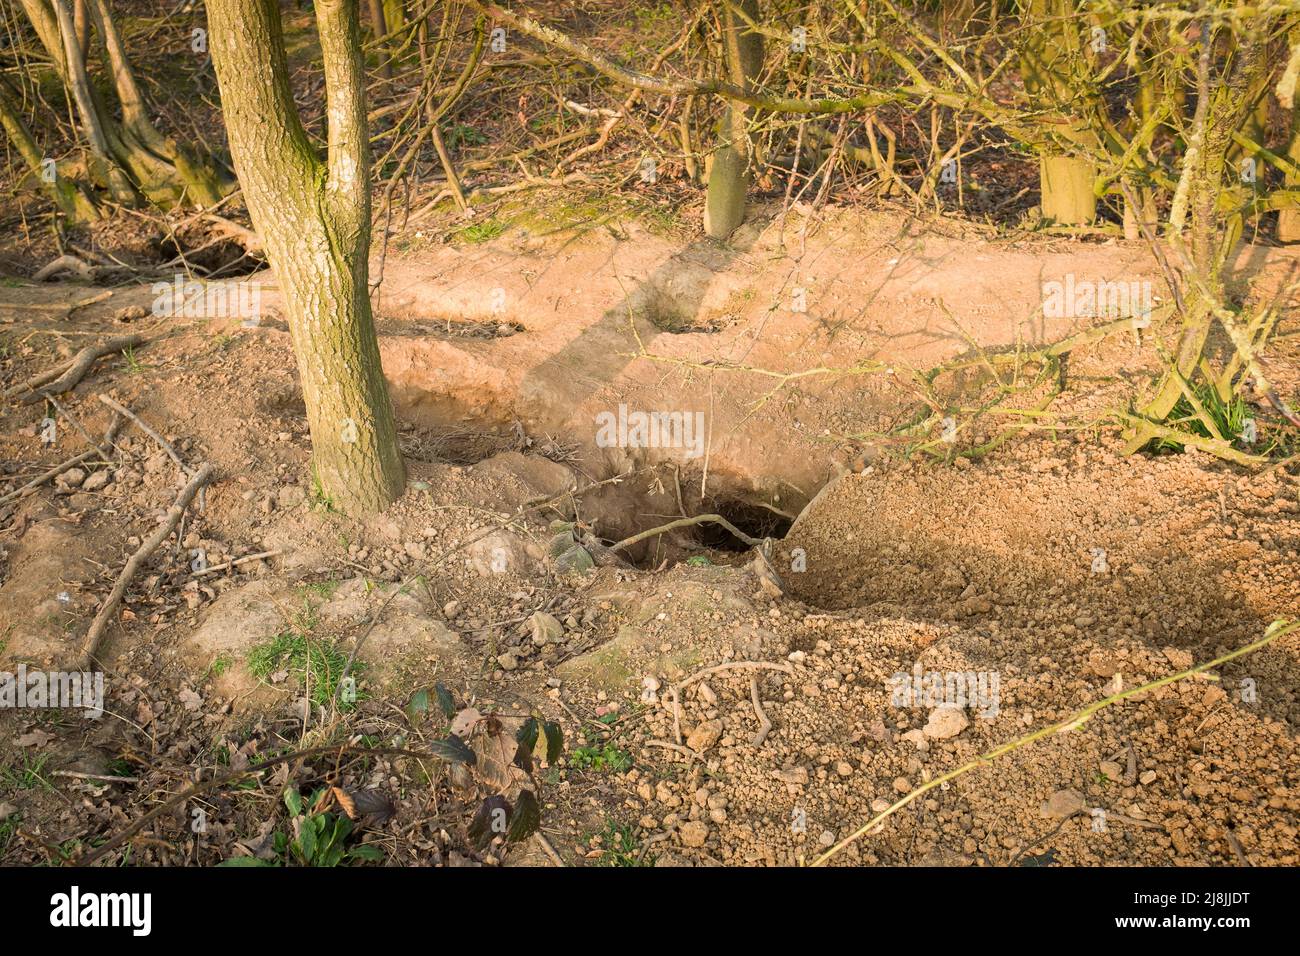 Badger ha subito danni, erosione del suolo da buchi in un bosco nel Buckinghamshire, Regno Unito Foto Stock